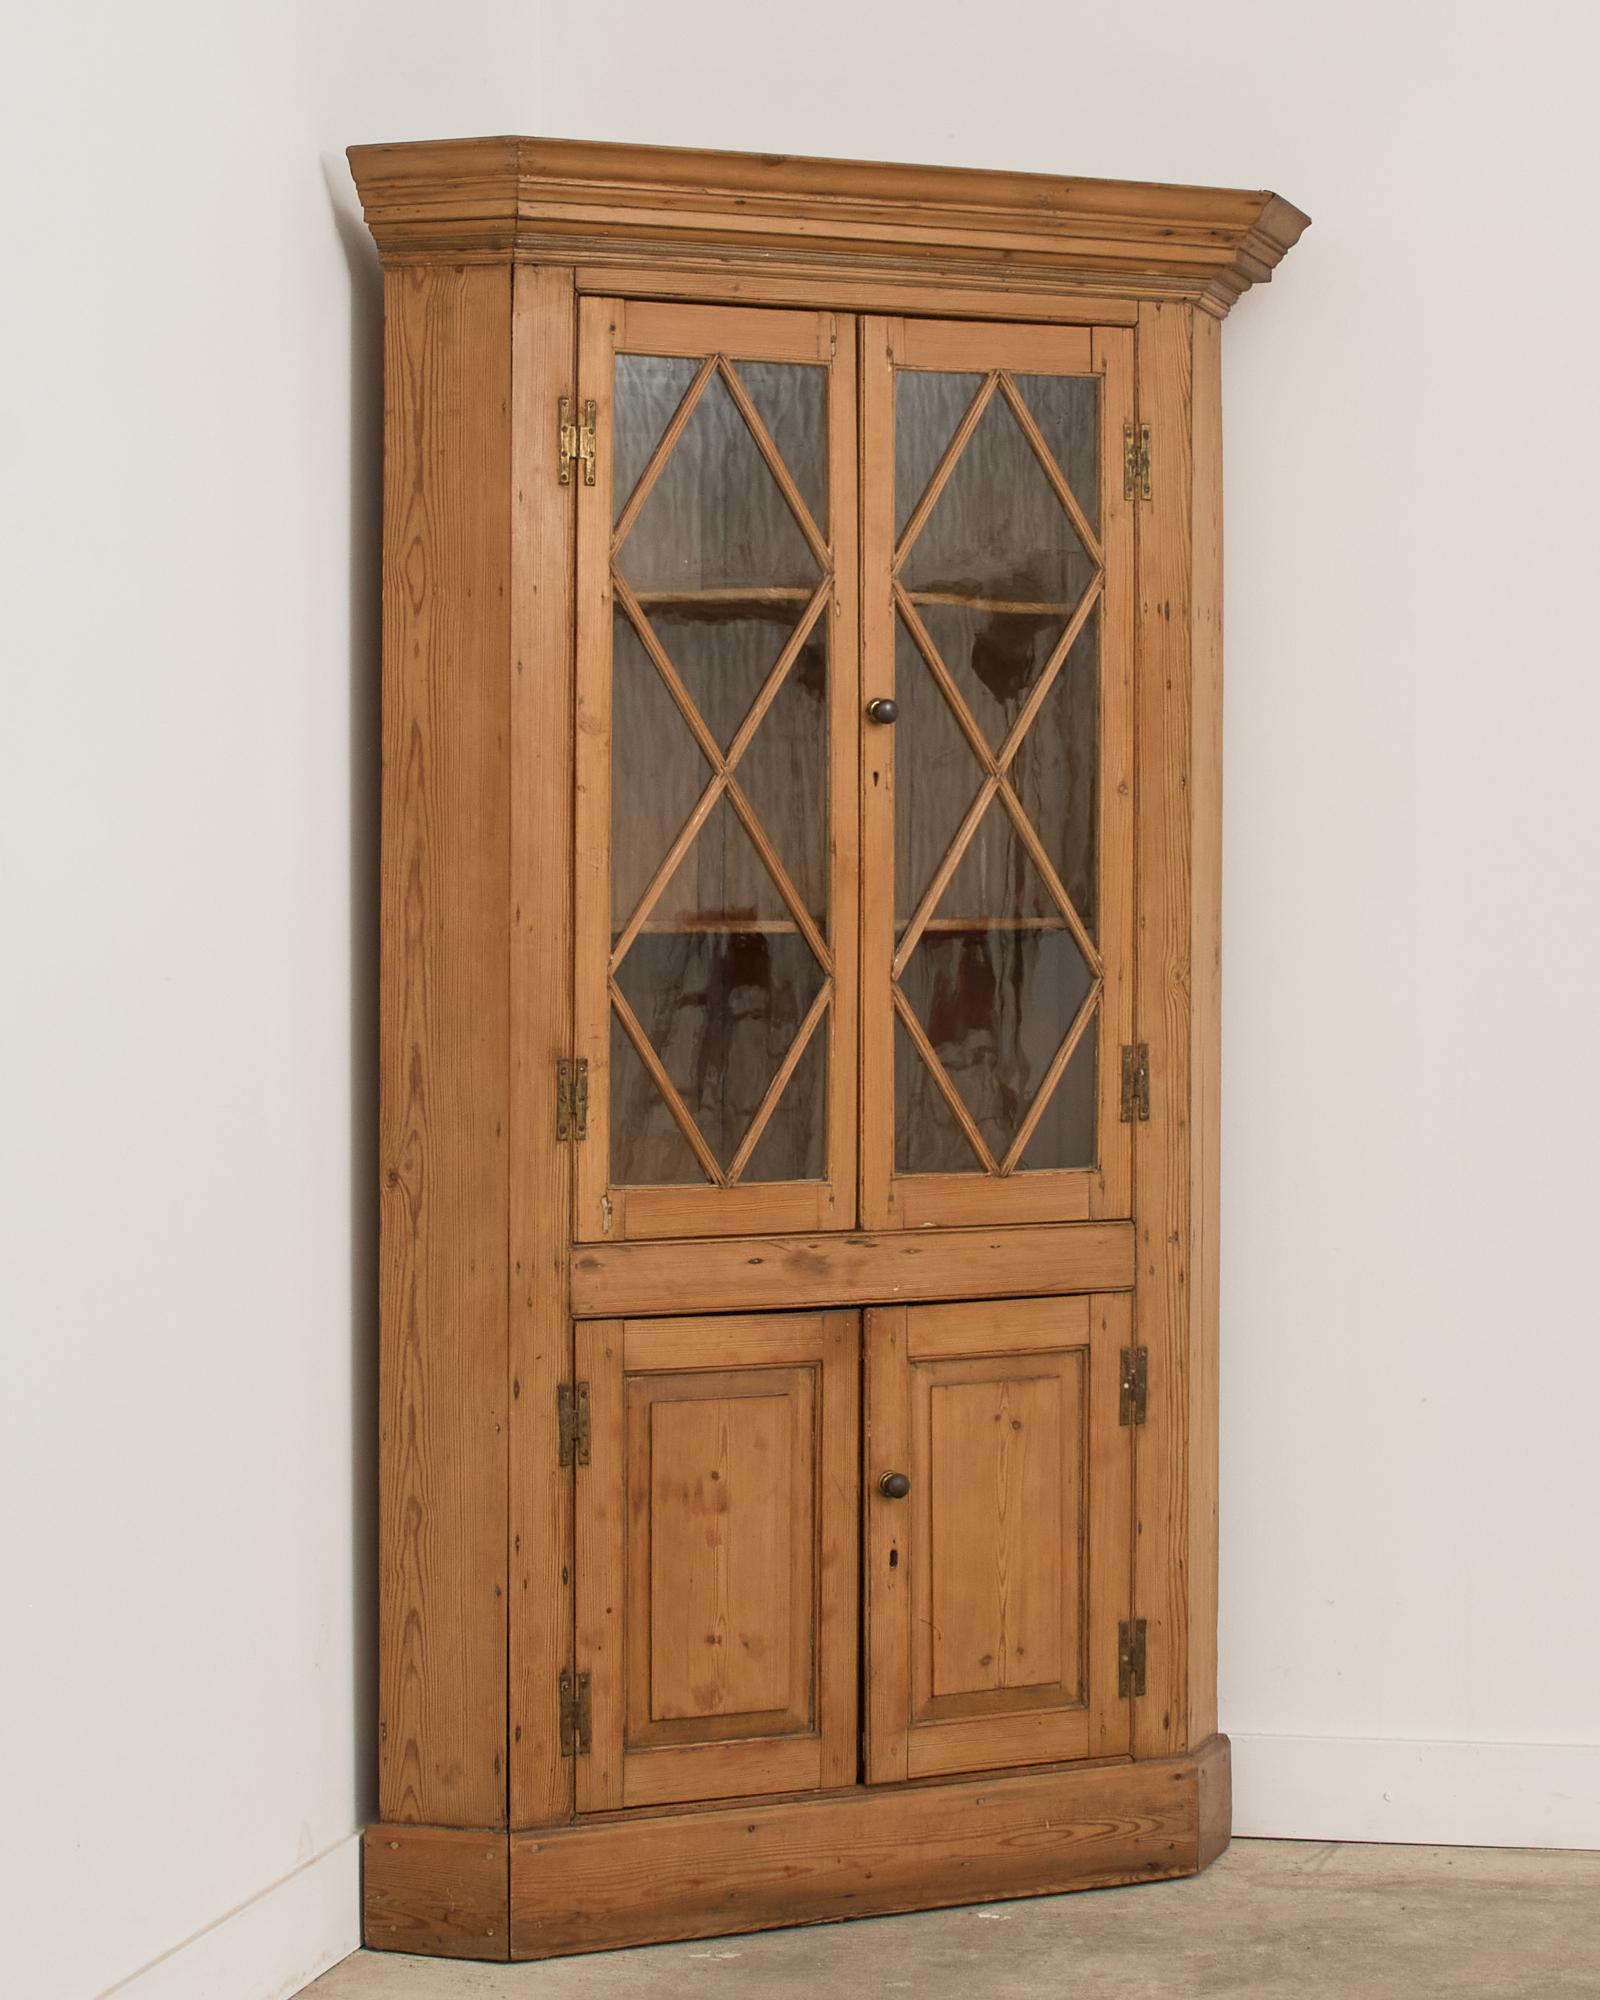 19. Jahrhundert prächtige Land Englisch provinziellen Schrank Eckschrank oder Bücherregal aus Kiefer gefertigt. Der Schrank hat ein Paar verglaste Türen über einem Paar getäfelter Türen. Die Oberseite hat eine Gesimsleiste, die an den Enden